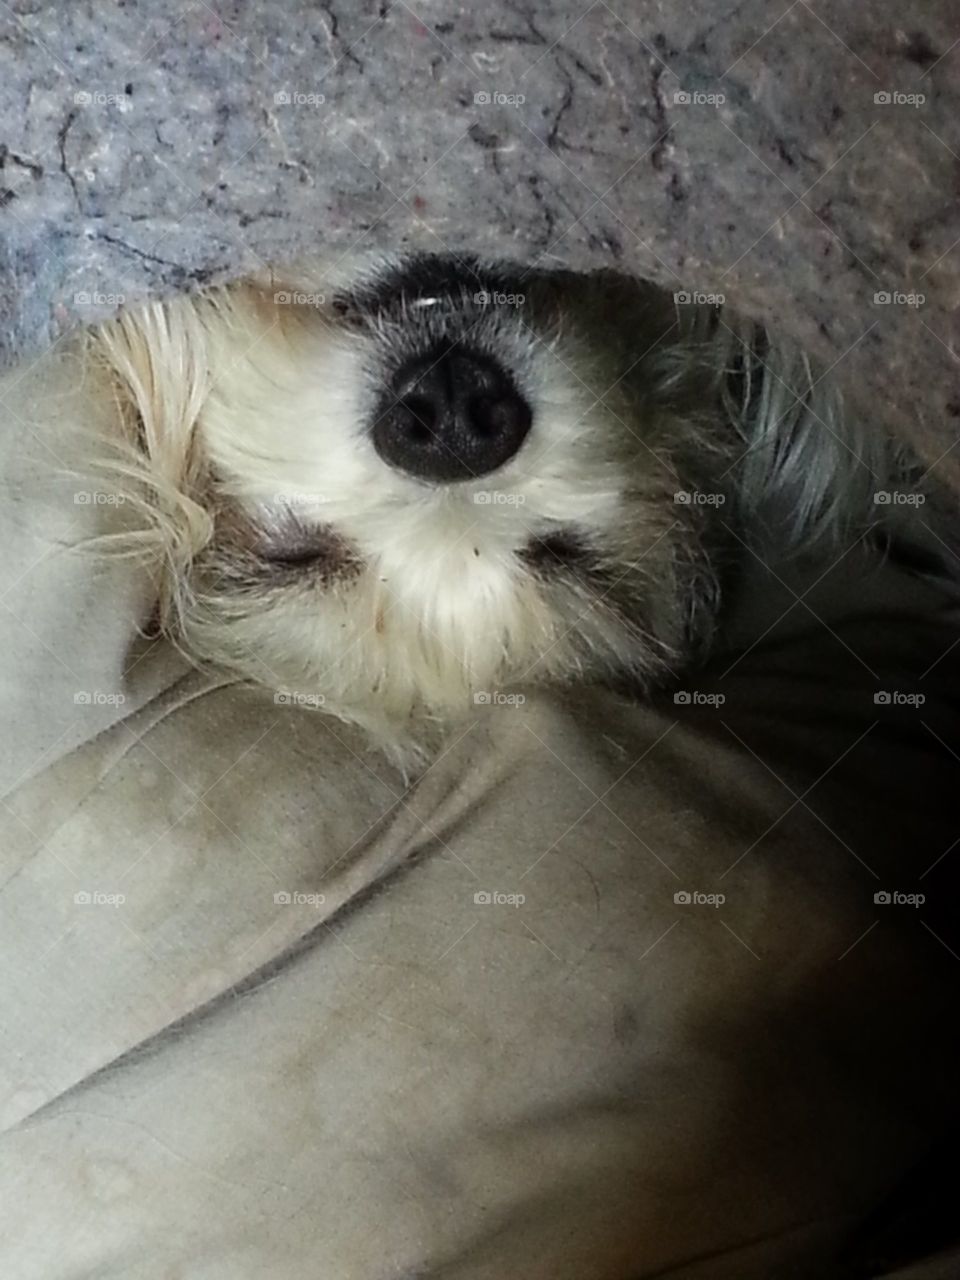 upsidedown dog. what a way to sleep